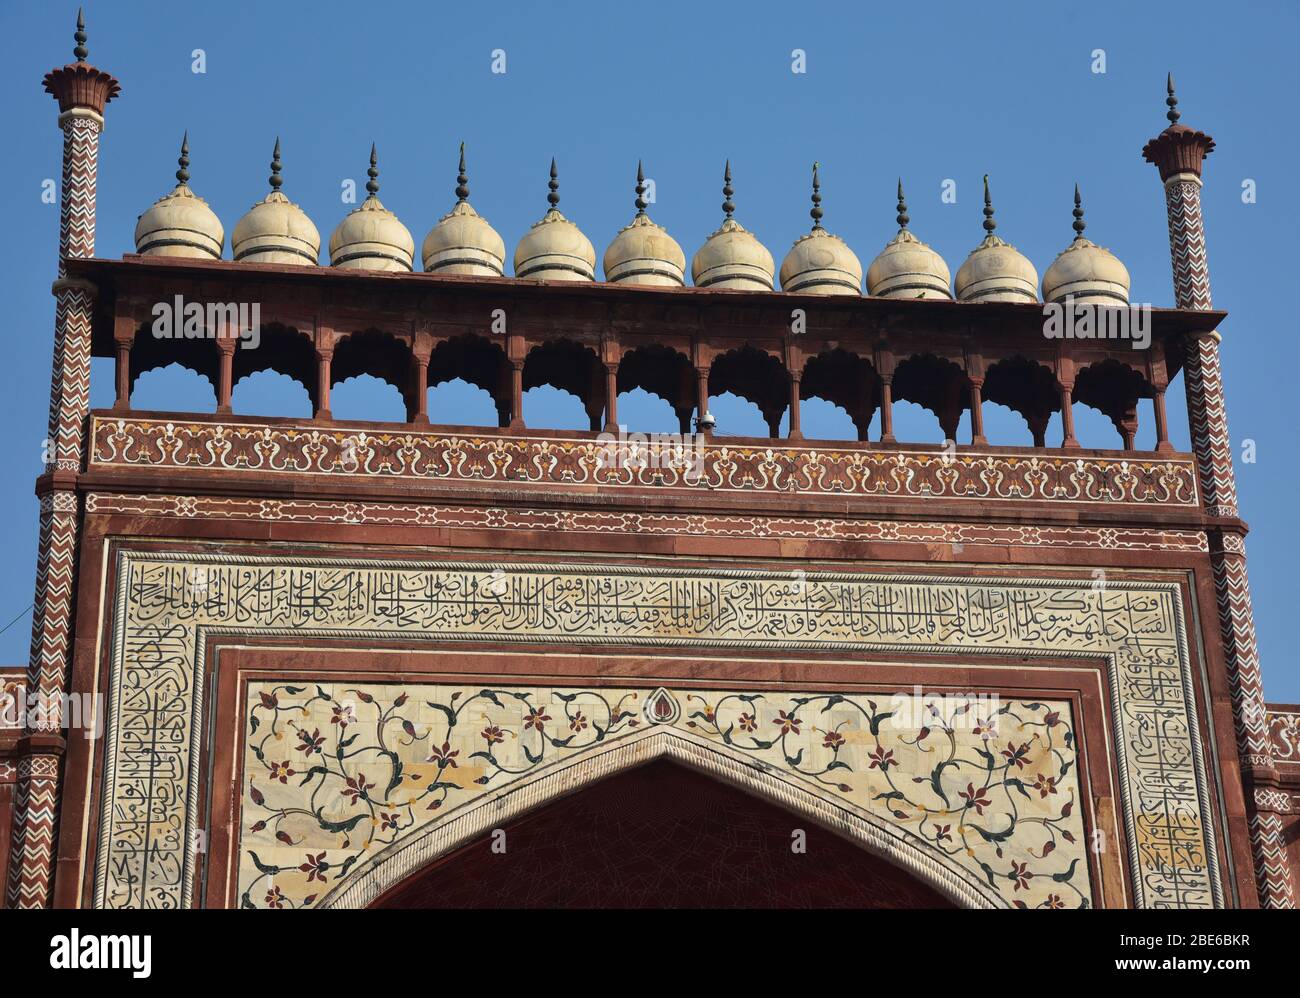 Dettaglio chhatris decorativo della Grande porta, Darwaza-i rauza, del complesso Taj Mahal, ingresso sud gateway, Uttar Pradesh, India, Asia. Foto Stock